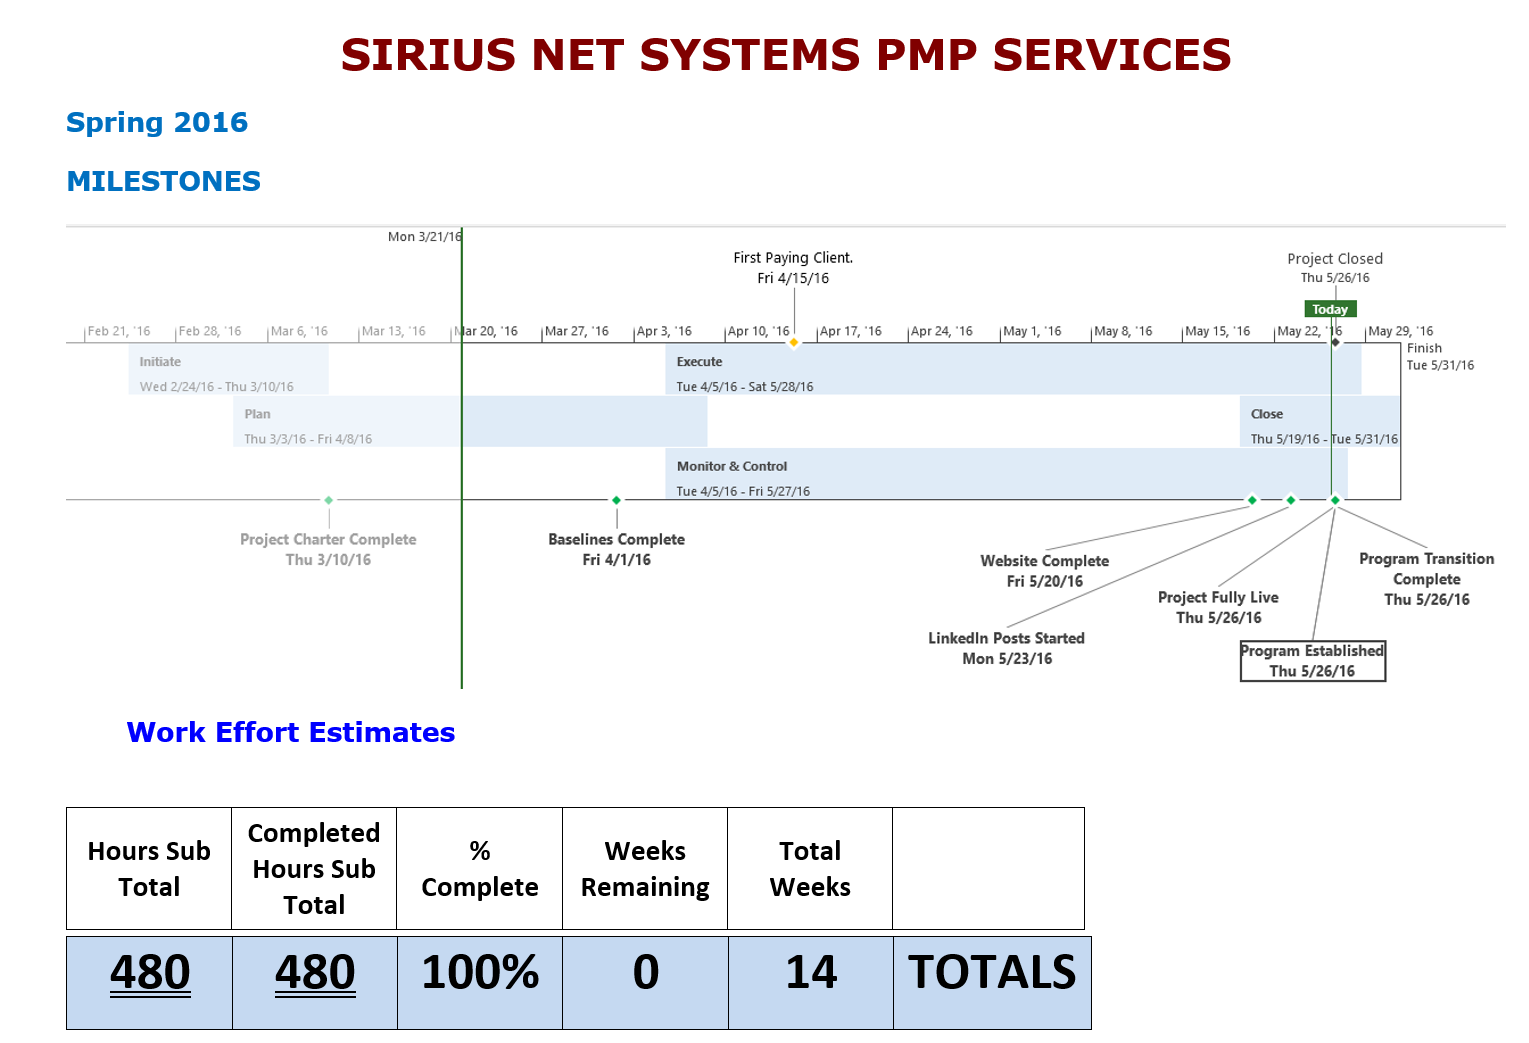 SNS PMP Services Project Milestones - copy